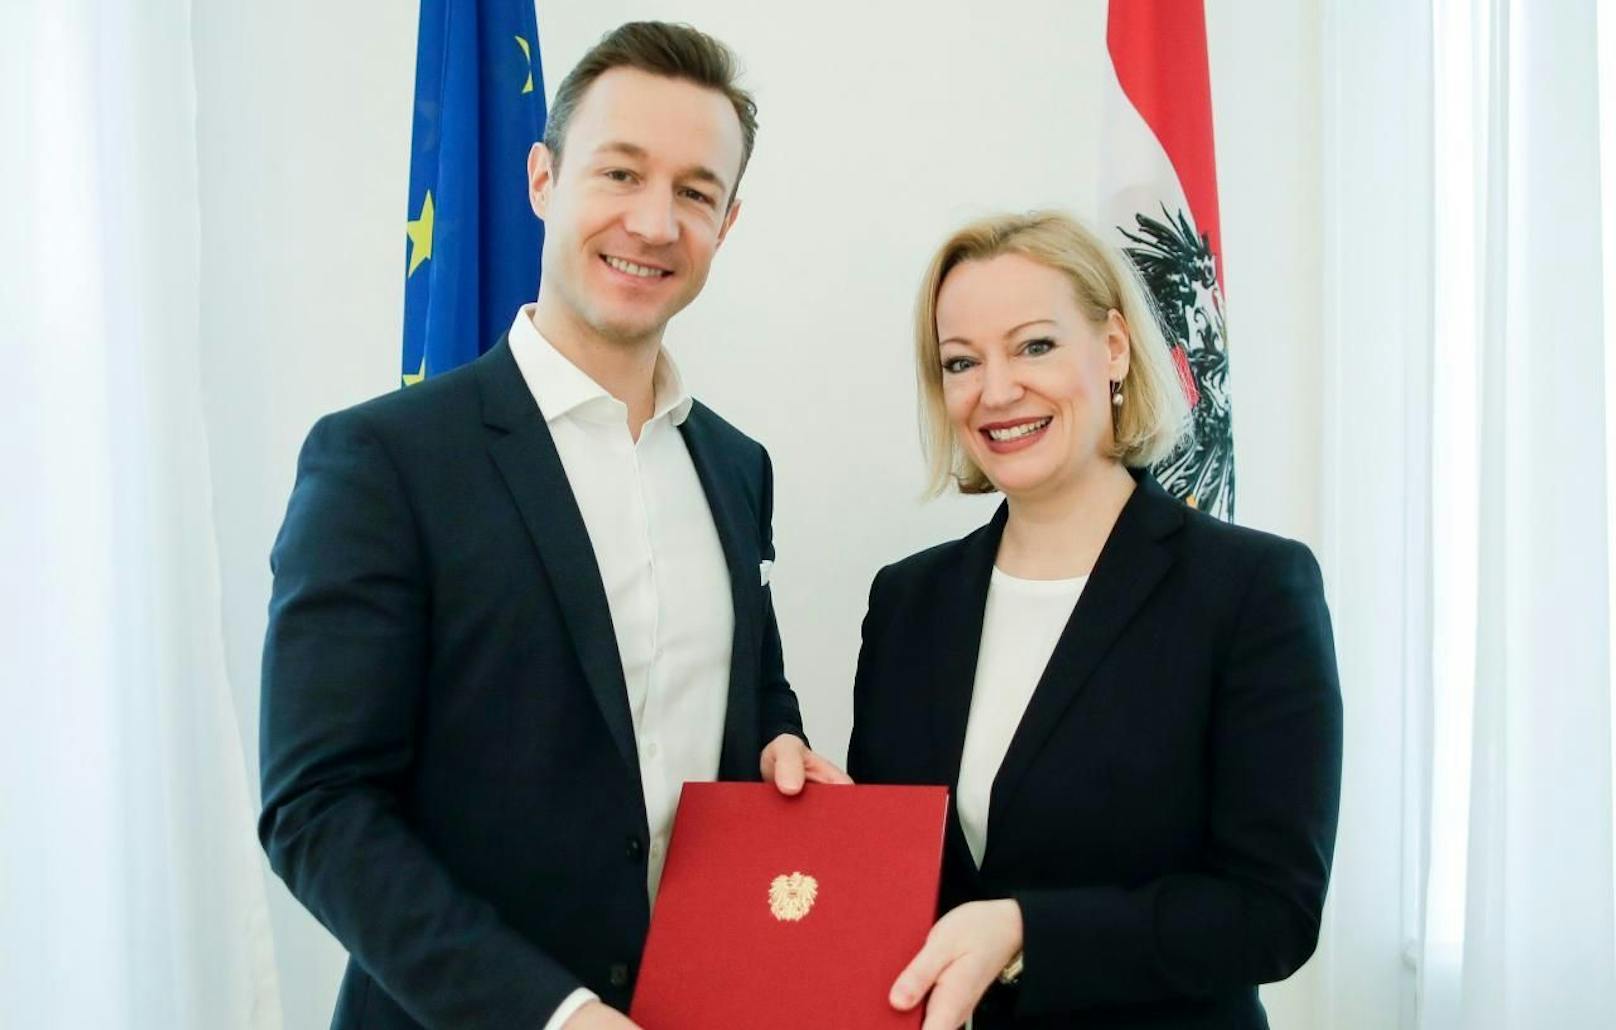 Erika Pieler (41) wurde von Kulturminister Gernot Blümel (ÖVP) offiziell zur neuen Präsidentin des Bundesdenkmalamts ernannt. (c) BKA/Andy Wenzel